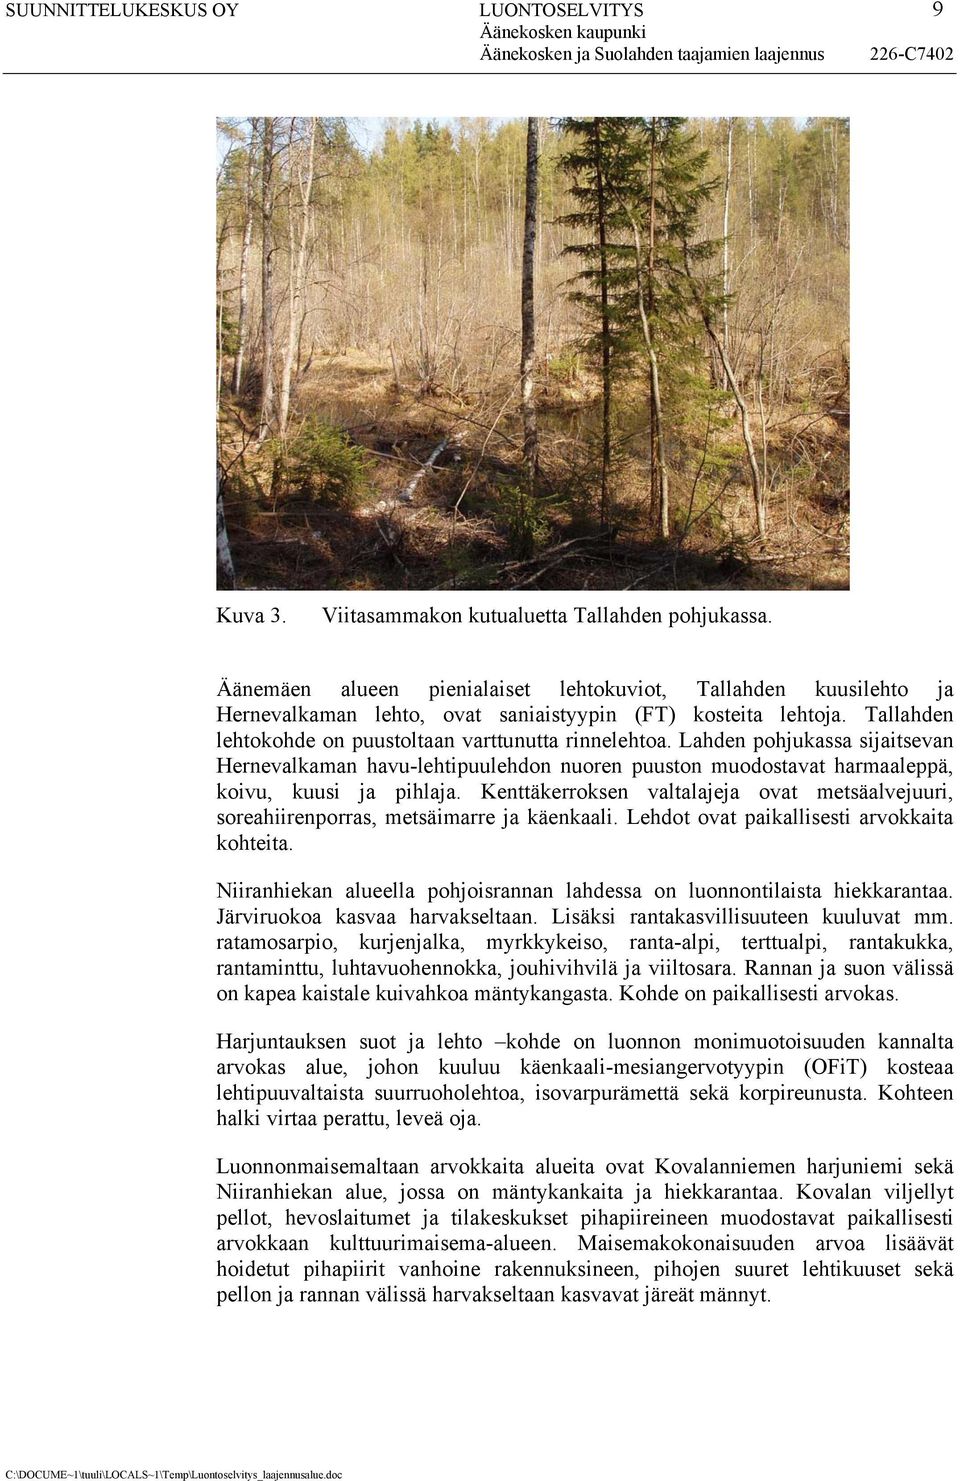 Lahden pohjukassa sijaitsevan Hernevalkaman havu-lehtipuulehdon nuoren puuston muodostavat harmaaleppä, koivu, kuusi ja pihlaja.